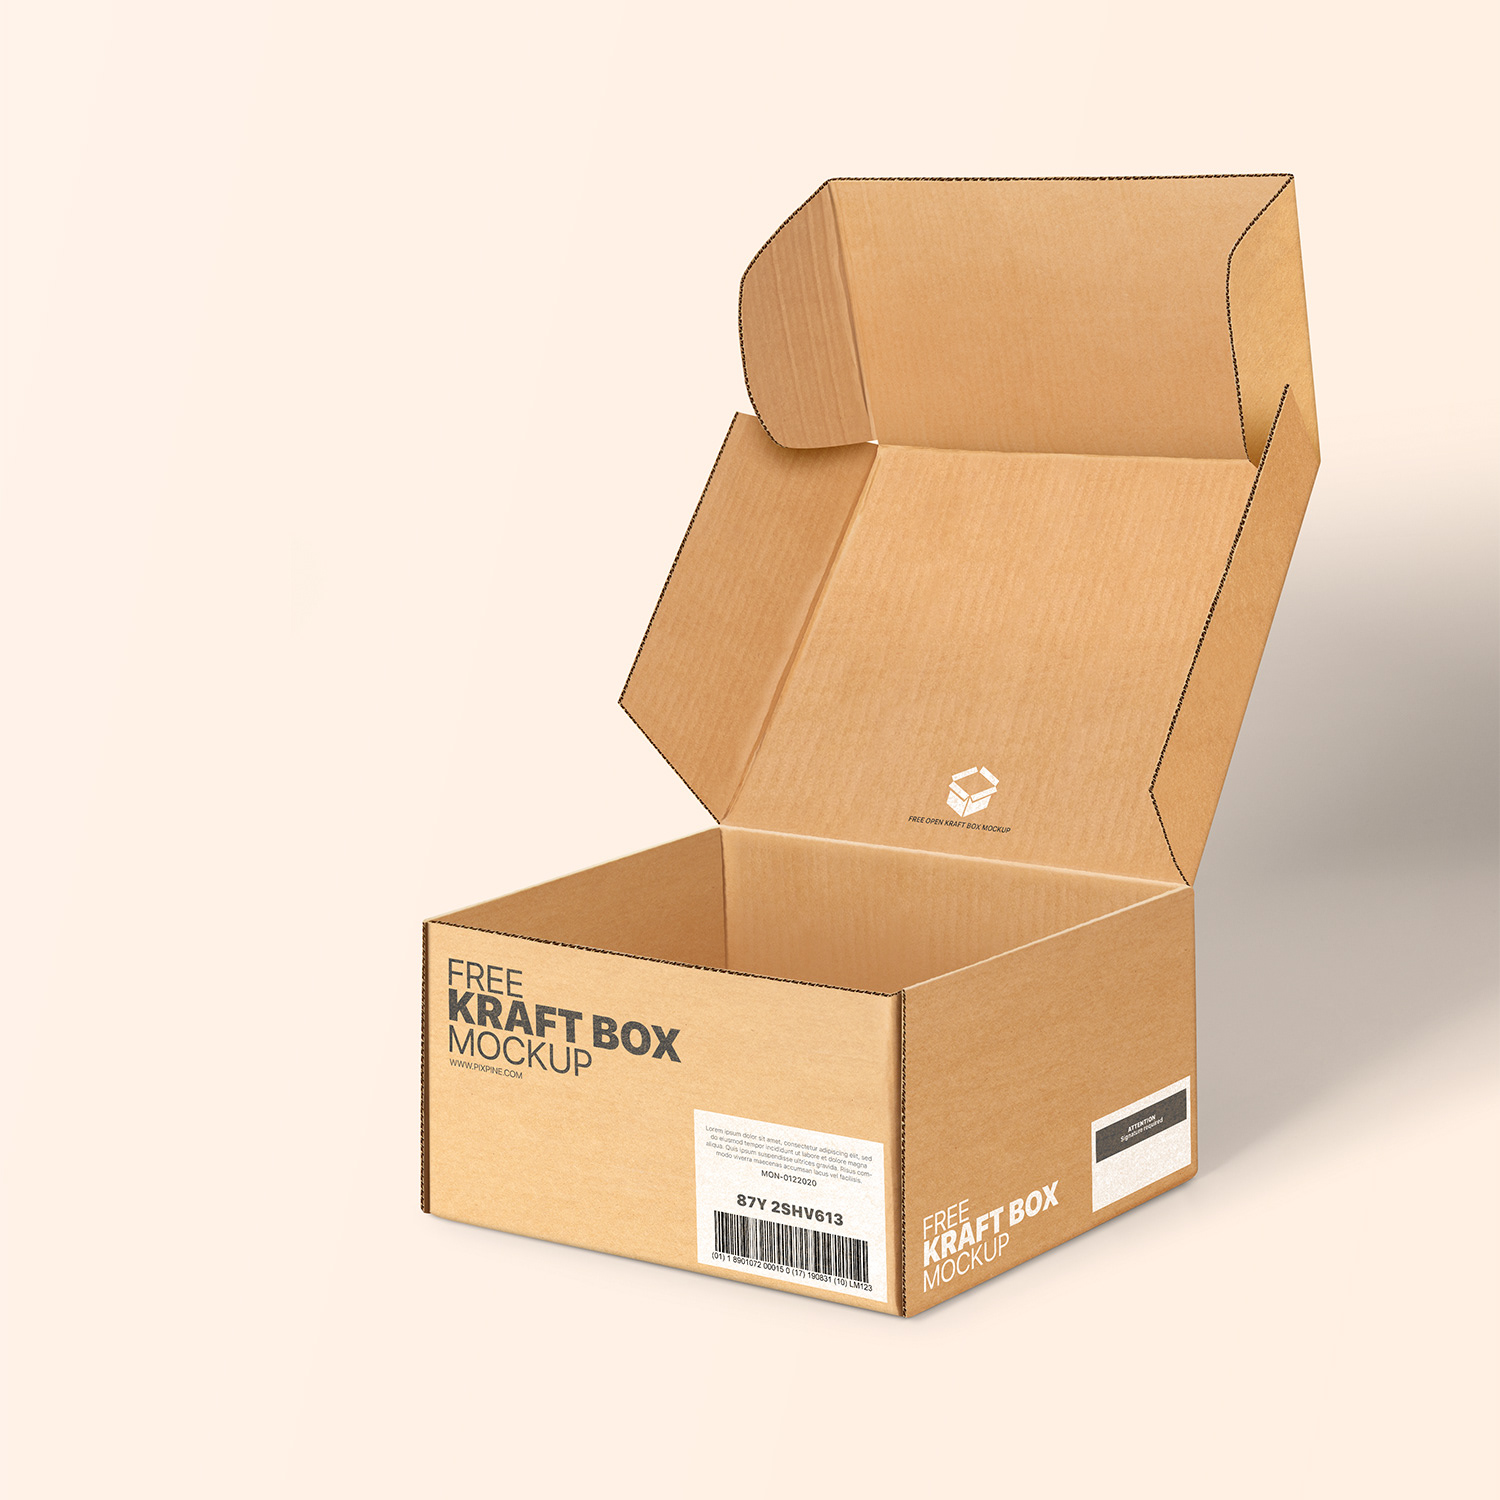 Box package. Картонная коробка. Мокап упаковка коробка. Мокапы картонных коробок. Коробки боксы мокап.